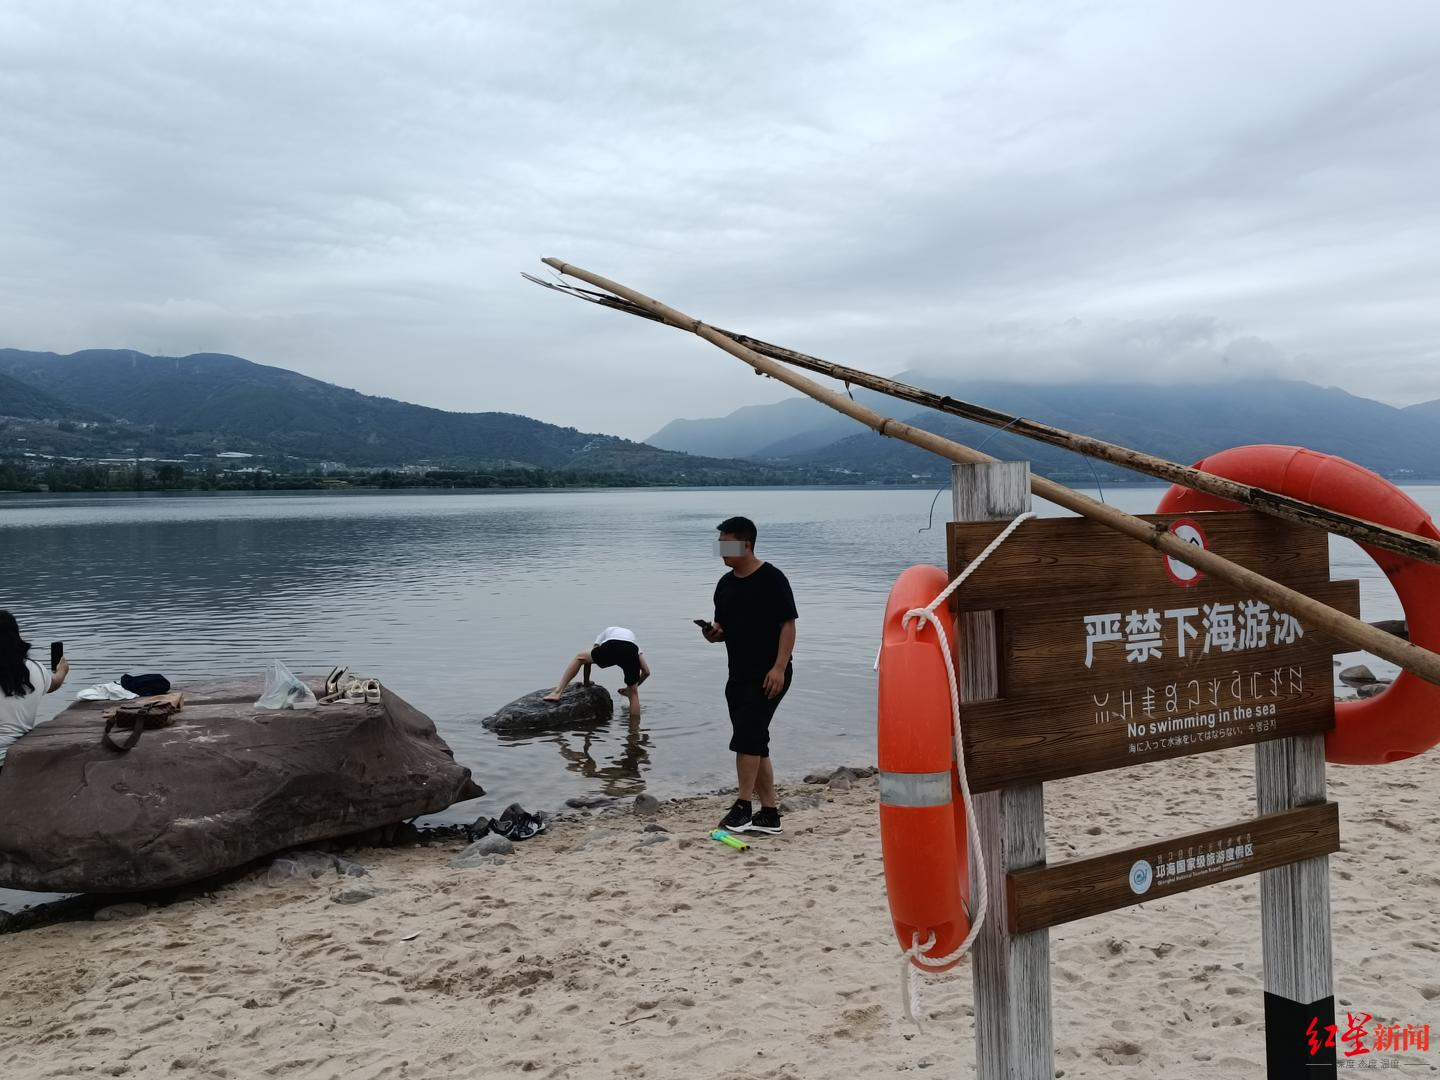 ↑沙滩上放置有竹竿、救生圈工具